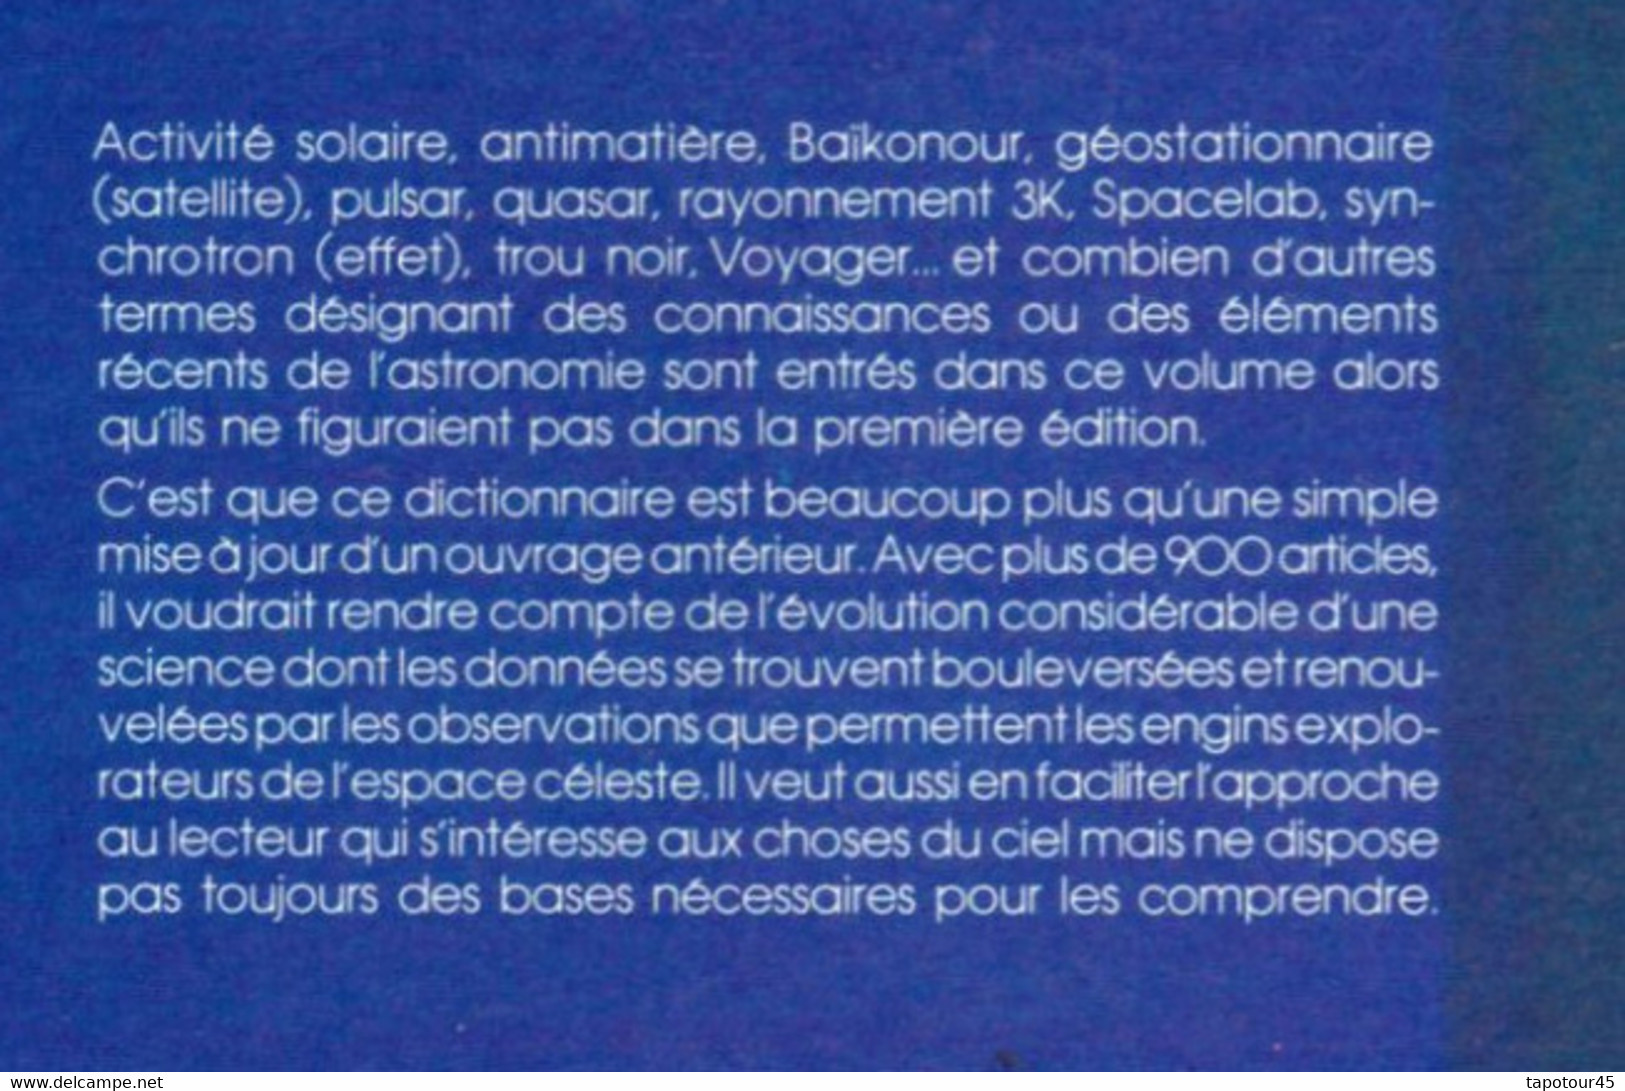 Tir Vert 1) Cosmos Et Aviation > Livre> Fran >Dictionnaire De L’astronomie "Larousse" - Astronomie